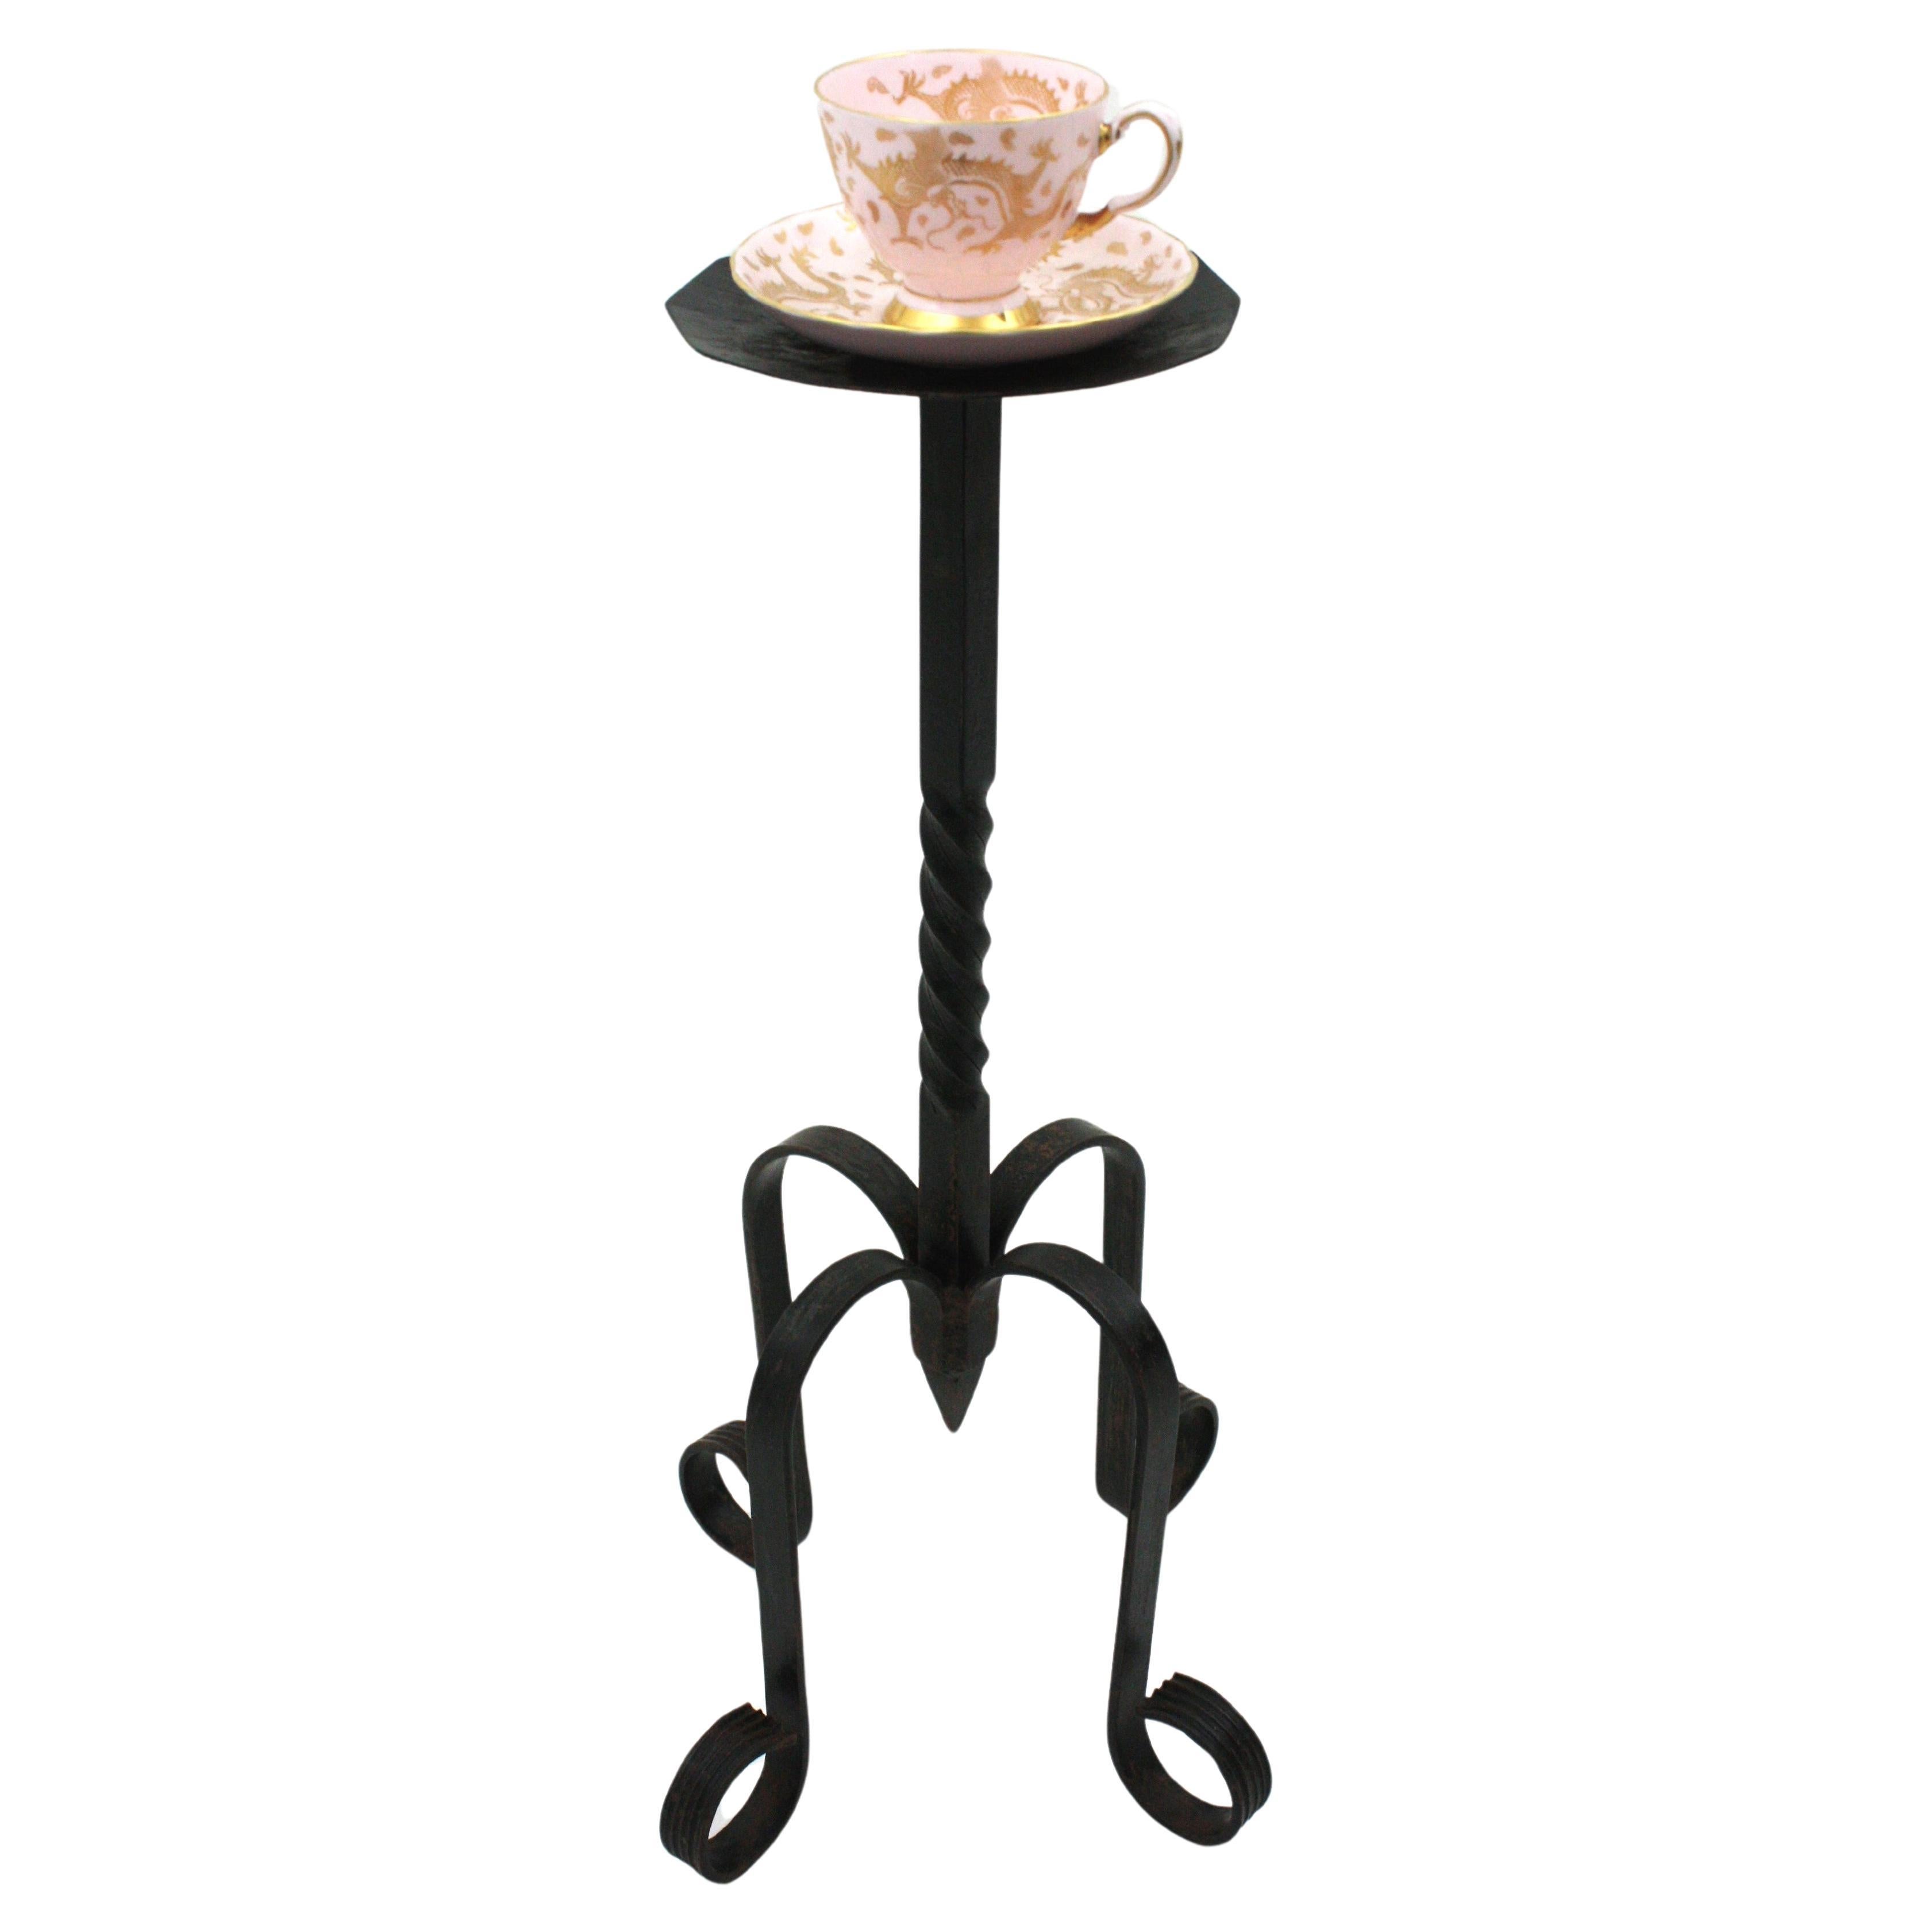 Eleganter runder Gueridon-Tisch im gotischen Stil, handgehämmertes Eisen, auf einem dreibeinigen Sockel. Spanien, 1940er Jahre.
Dieser schmiedeeiserne, schwarz lackierte Tisch hat verdrehte Details am Dampf und die Platte steht auf einem vierfüßigen